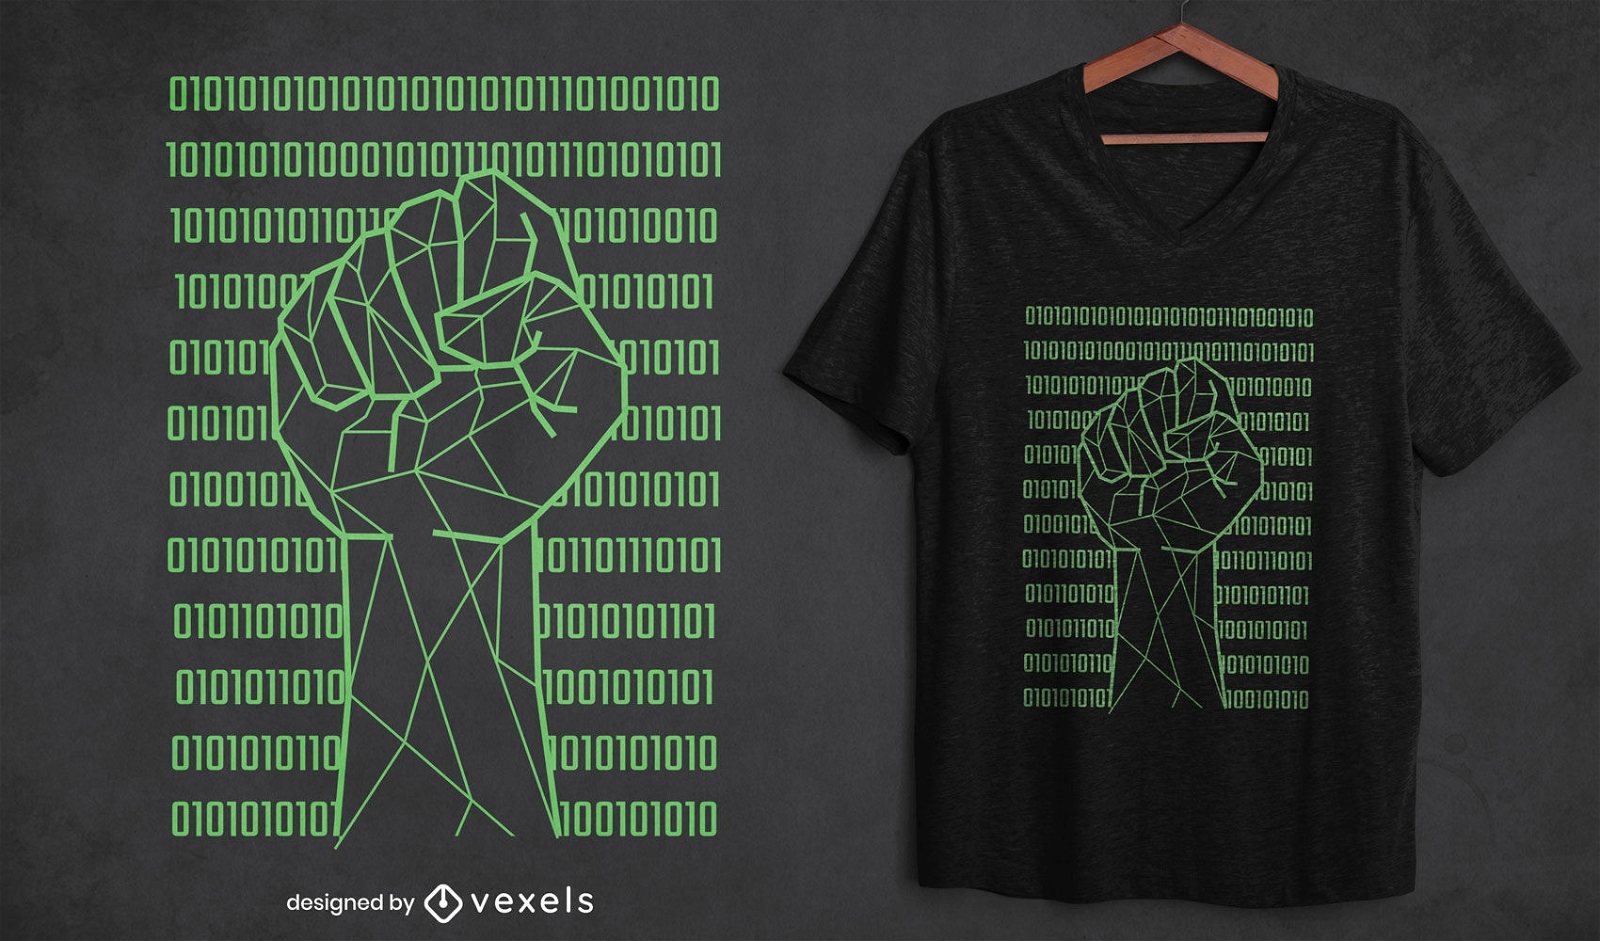 Puño sobre diseño de camiseta de código binario